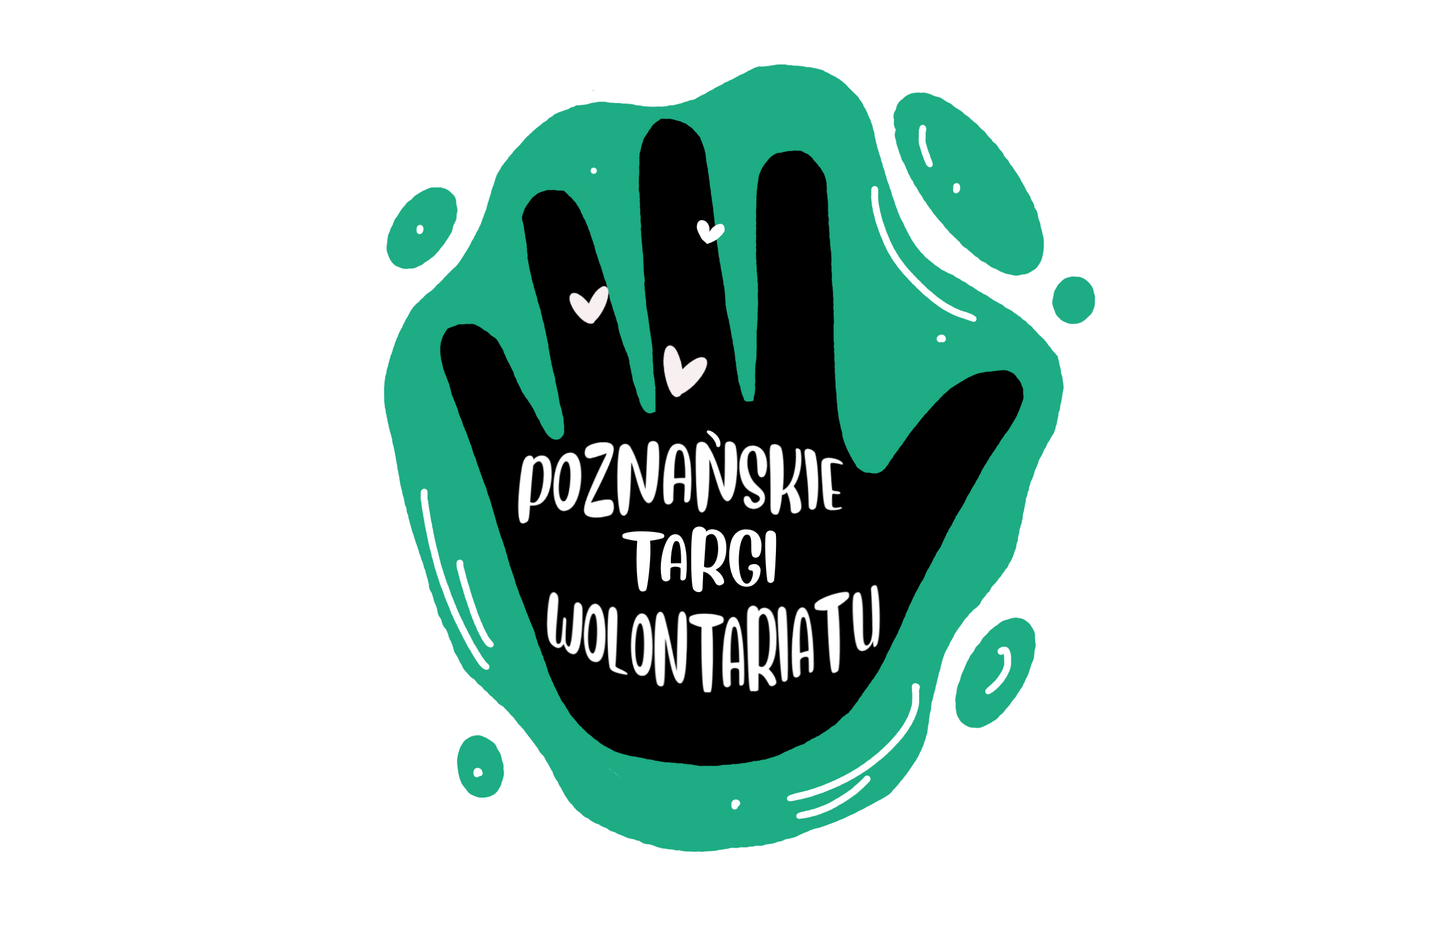 Pomocna dłoń jako symbol wolontariatu. Logo Poznańskie Targi Wolontariatu